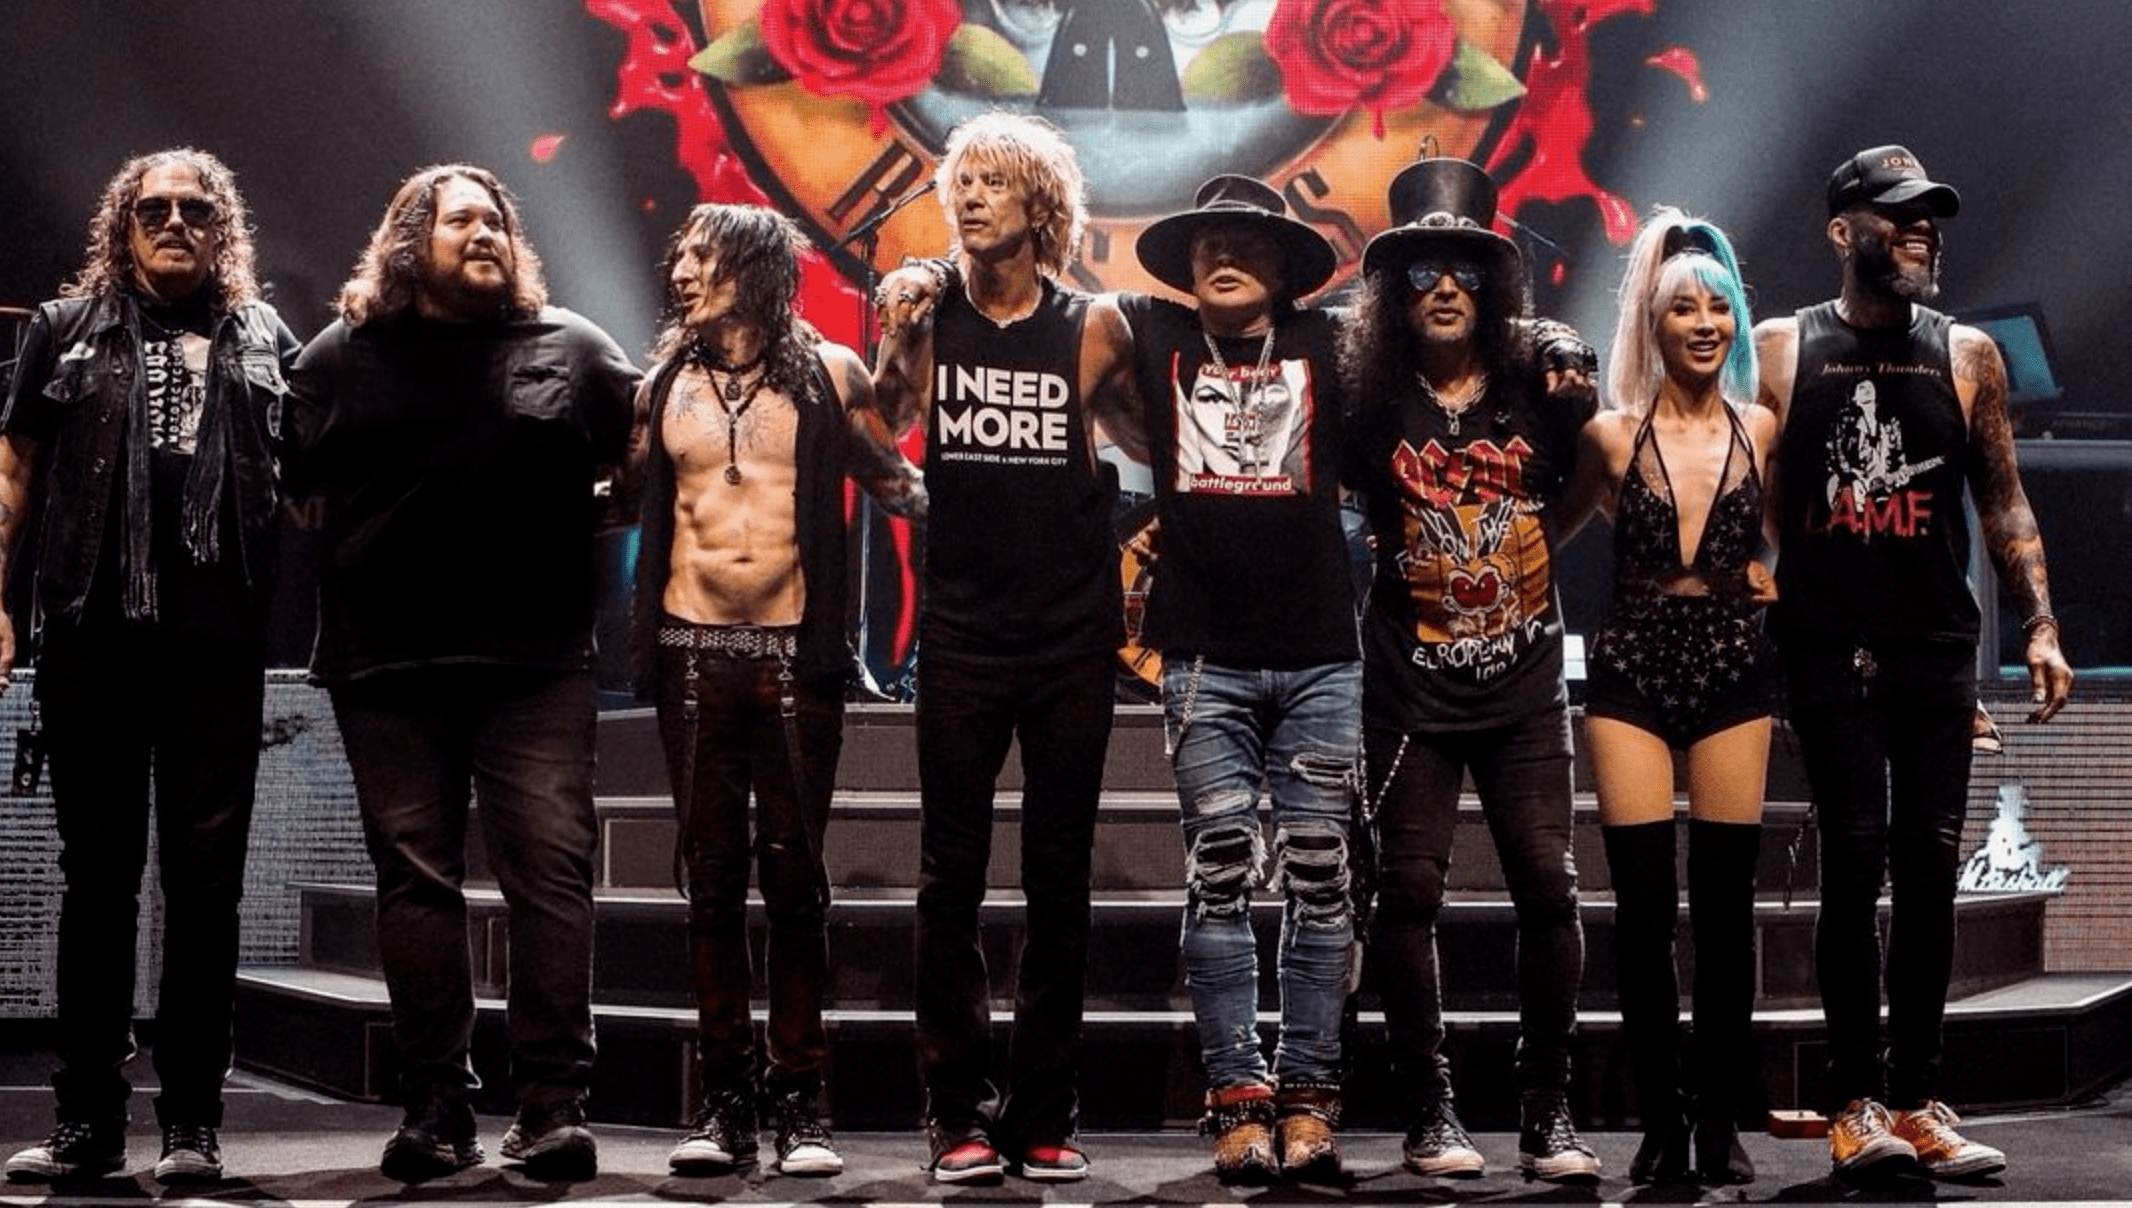 Guns N' Roses - The General (tradução) #repost @DANGER